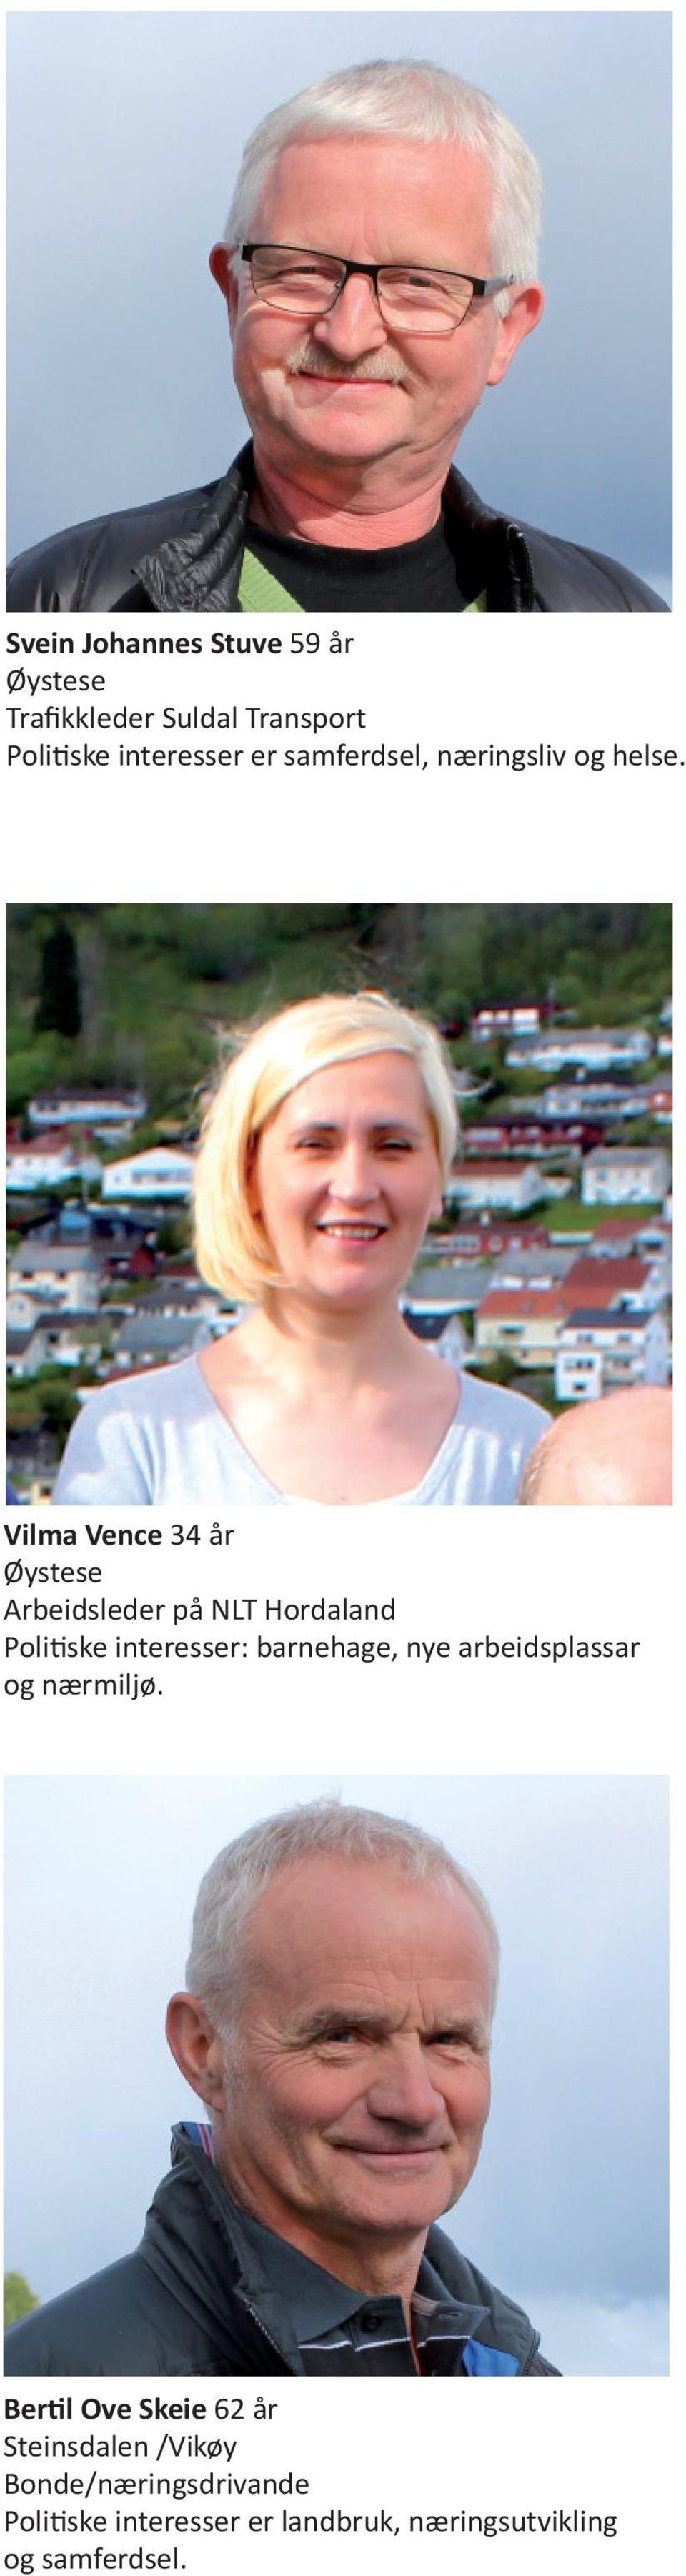 Vilma Vence 34 år Arbeidsleder på NLT Hordaland Poli ske interesser: barnehage, nye